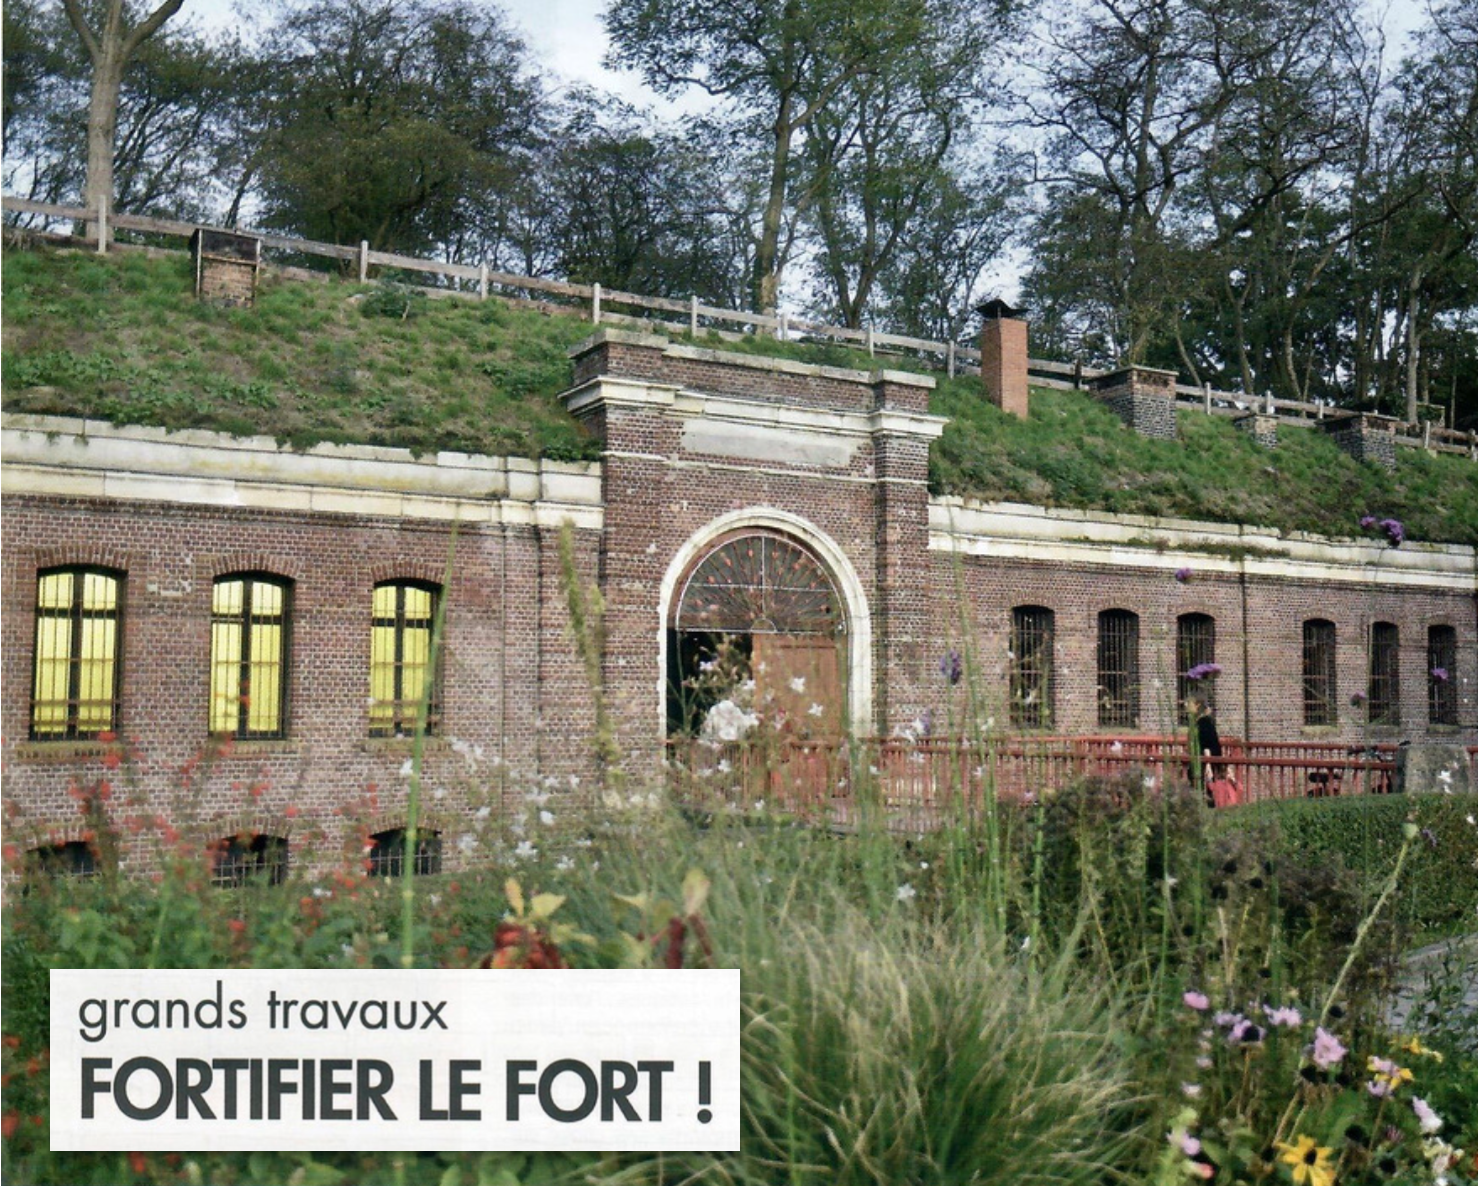 Fortifier